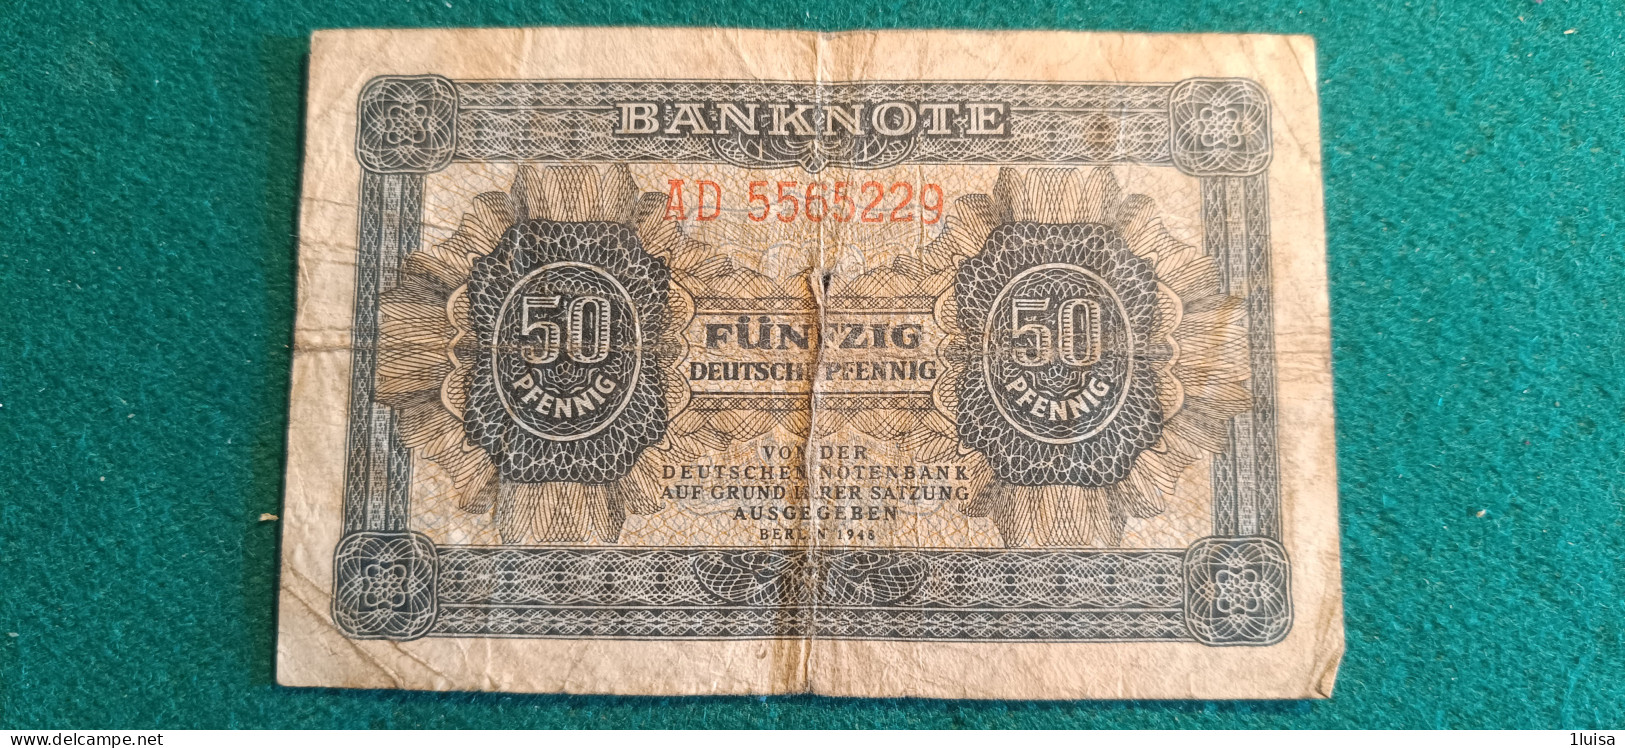 GERMANIA 50 PFENNIG 1948 - 50 Deutsche Pfennig